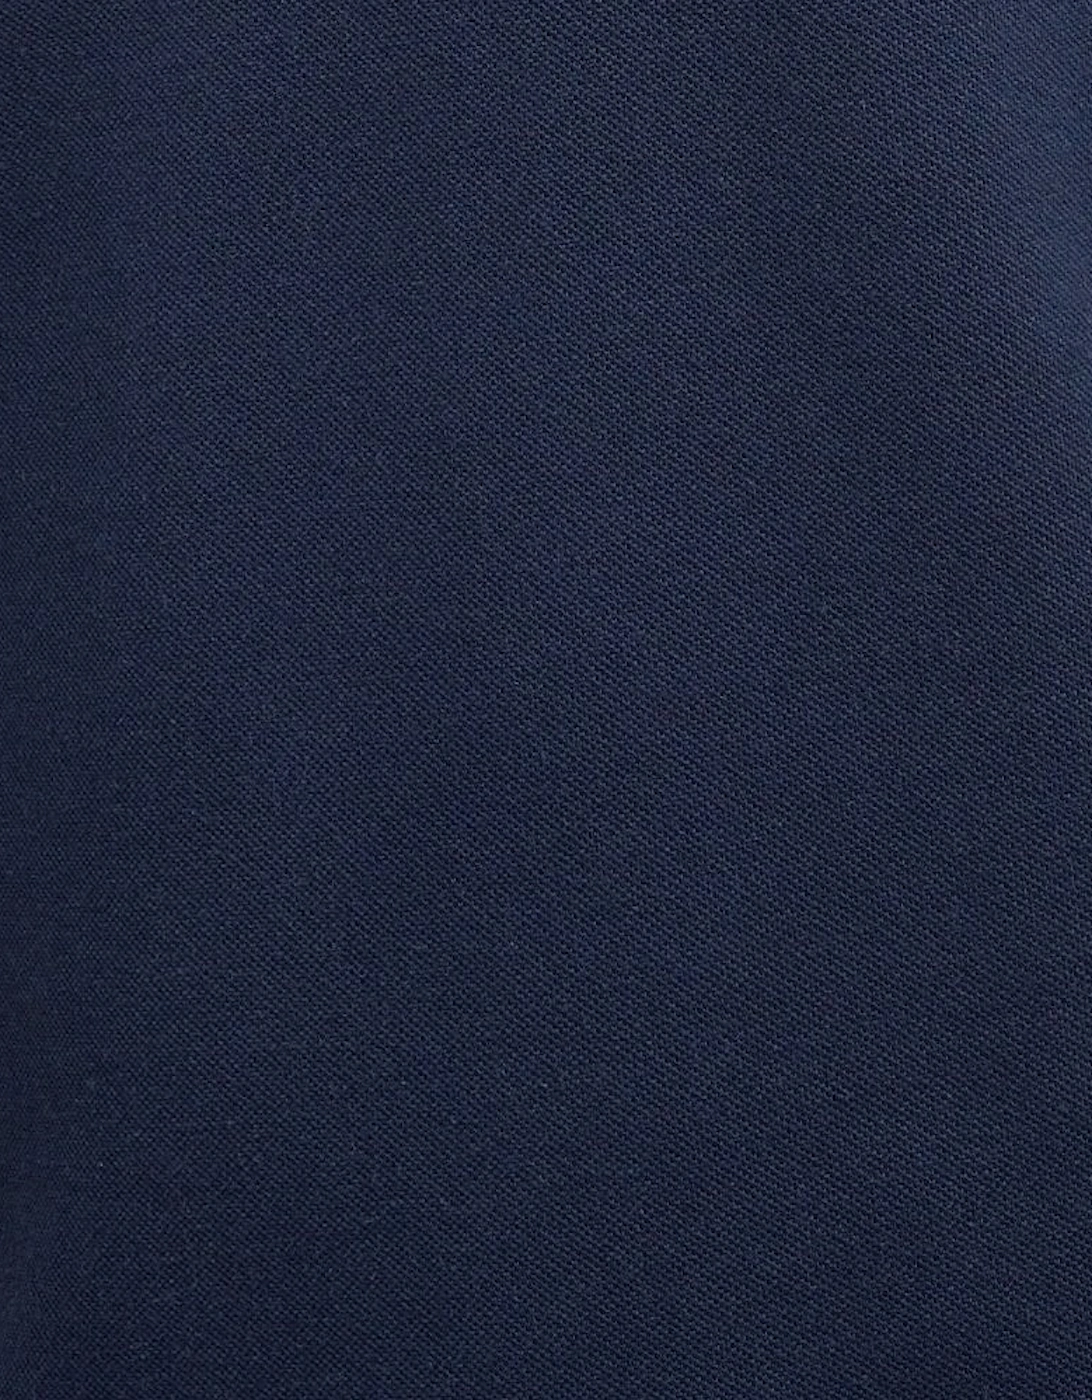 Heim T-Shirt - Navy Blue